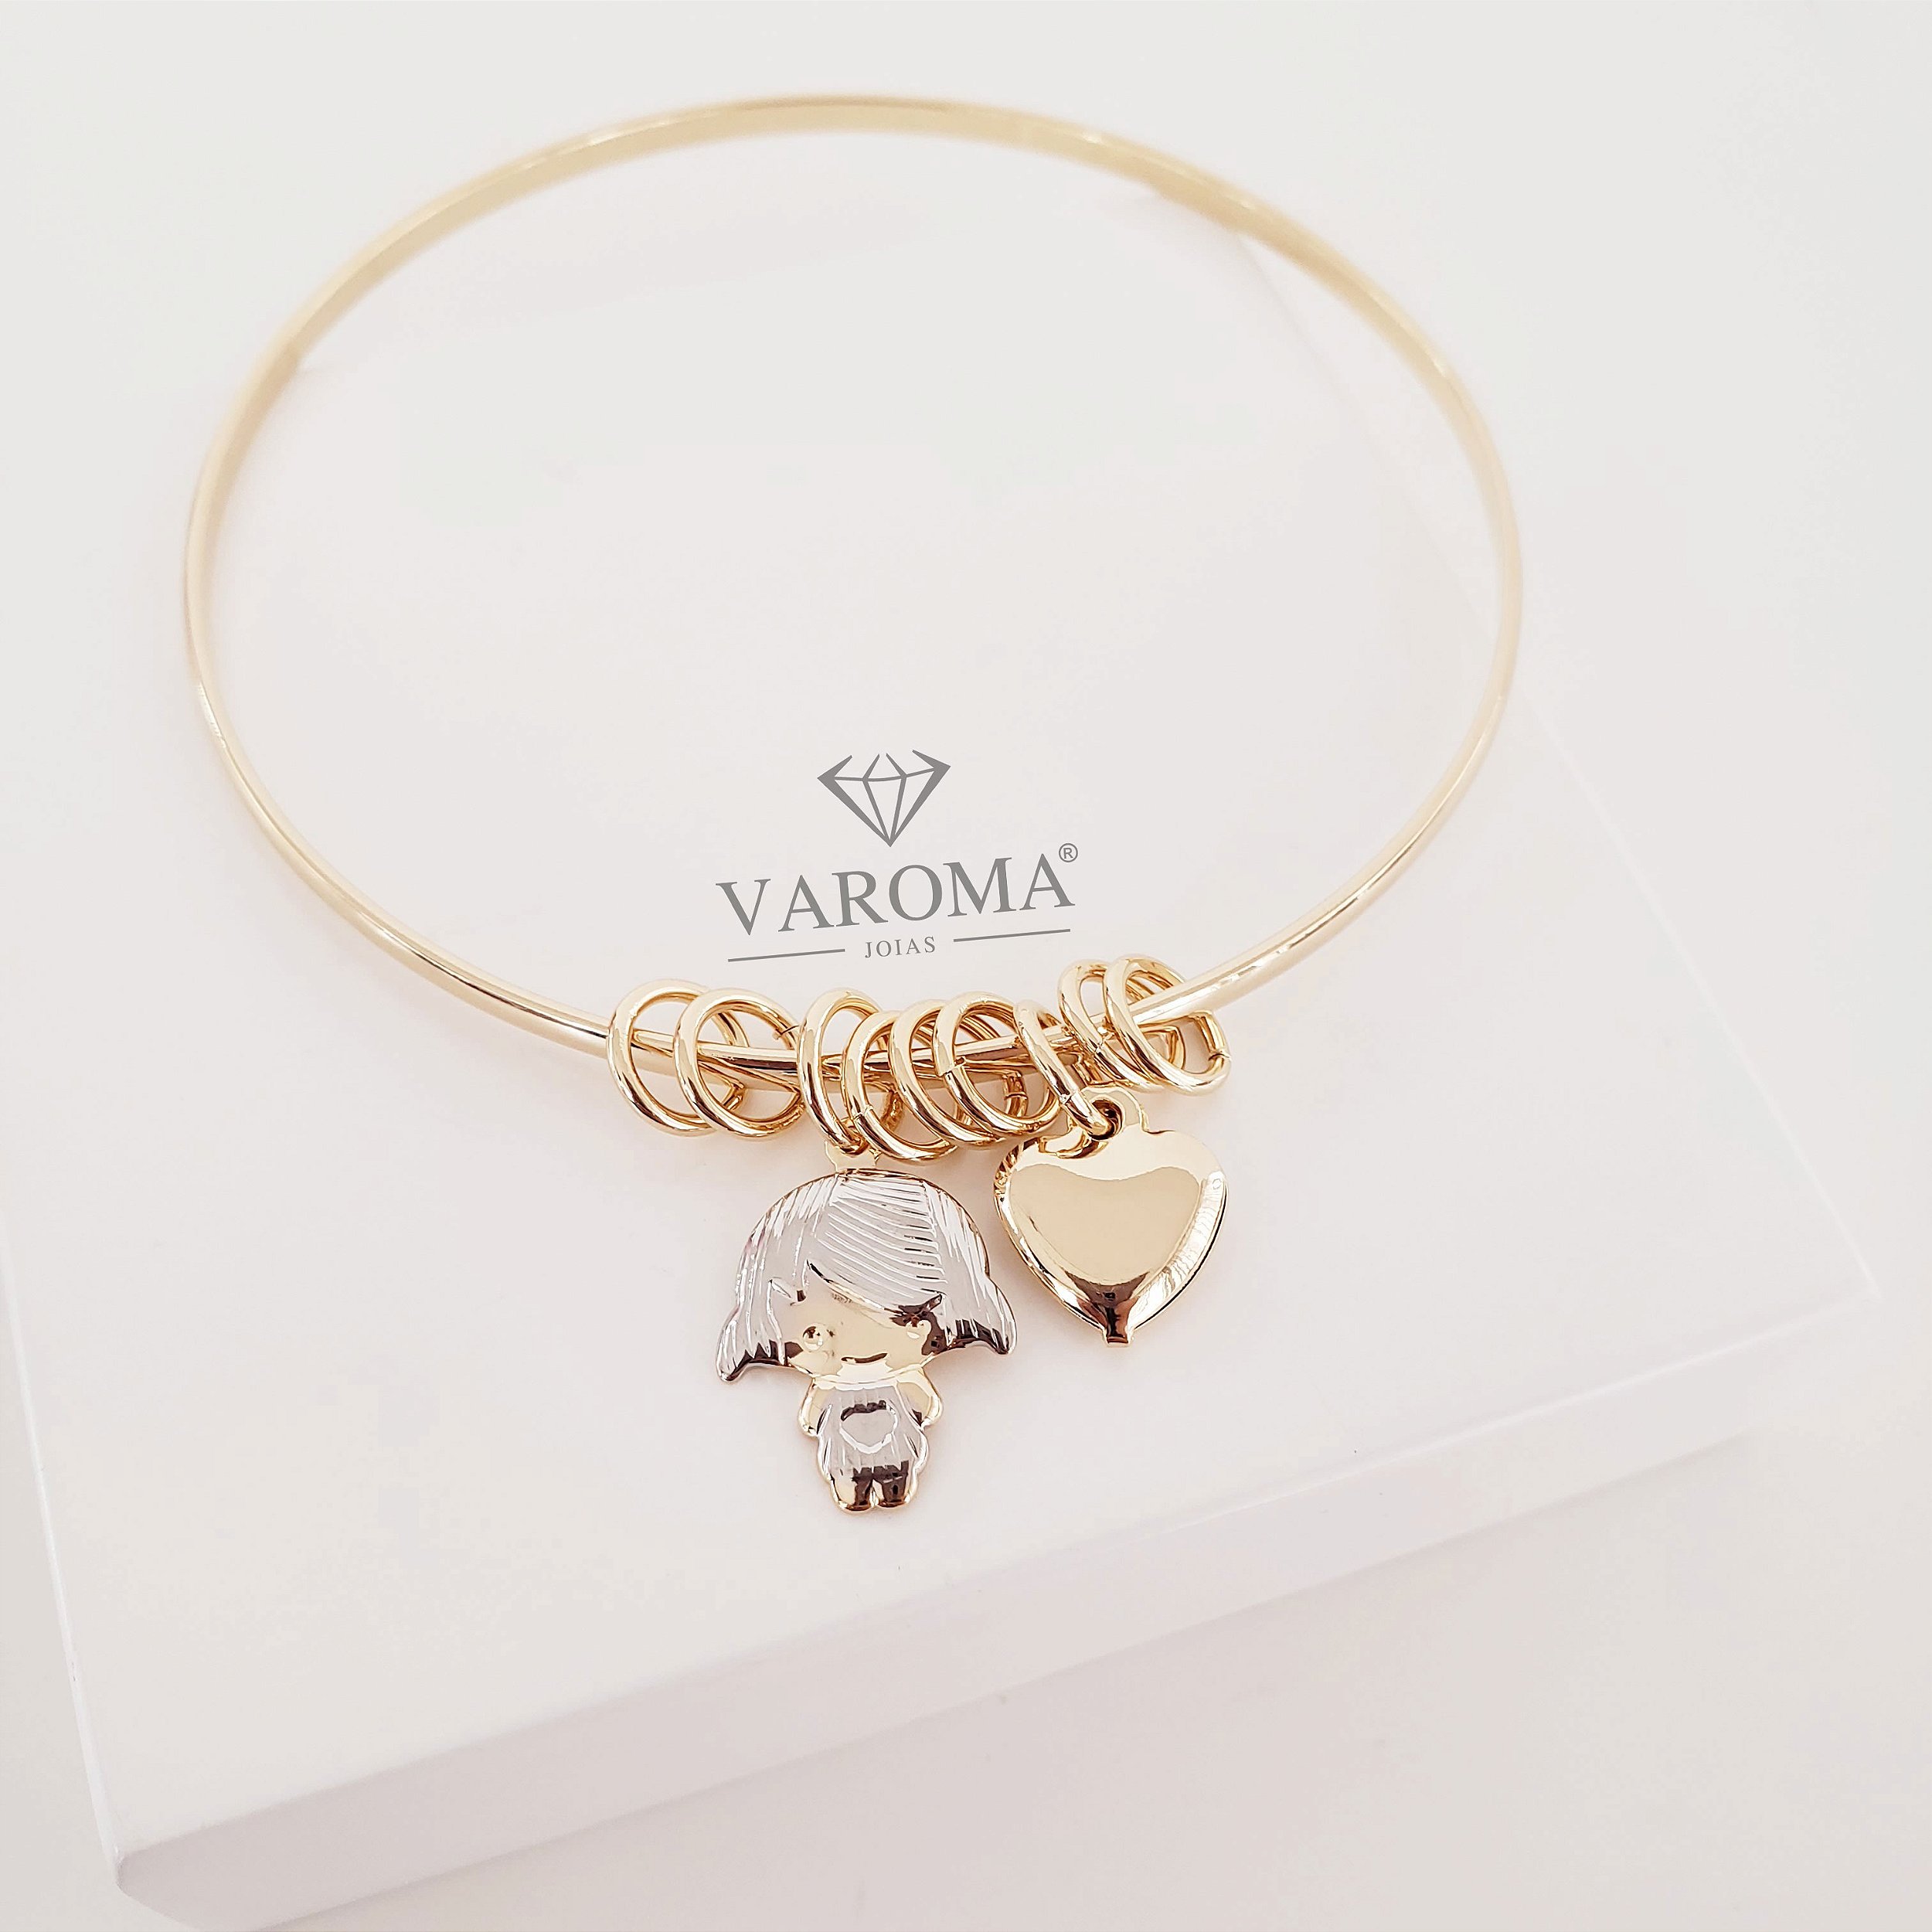 Bracelete especial com pingente de filho com detalhes em ródio e coração  banhado em ouro 18k - Varoma Joias